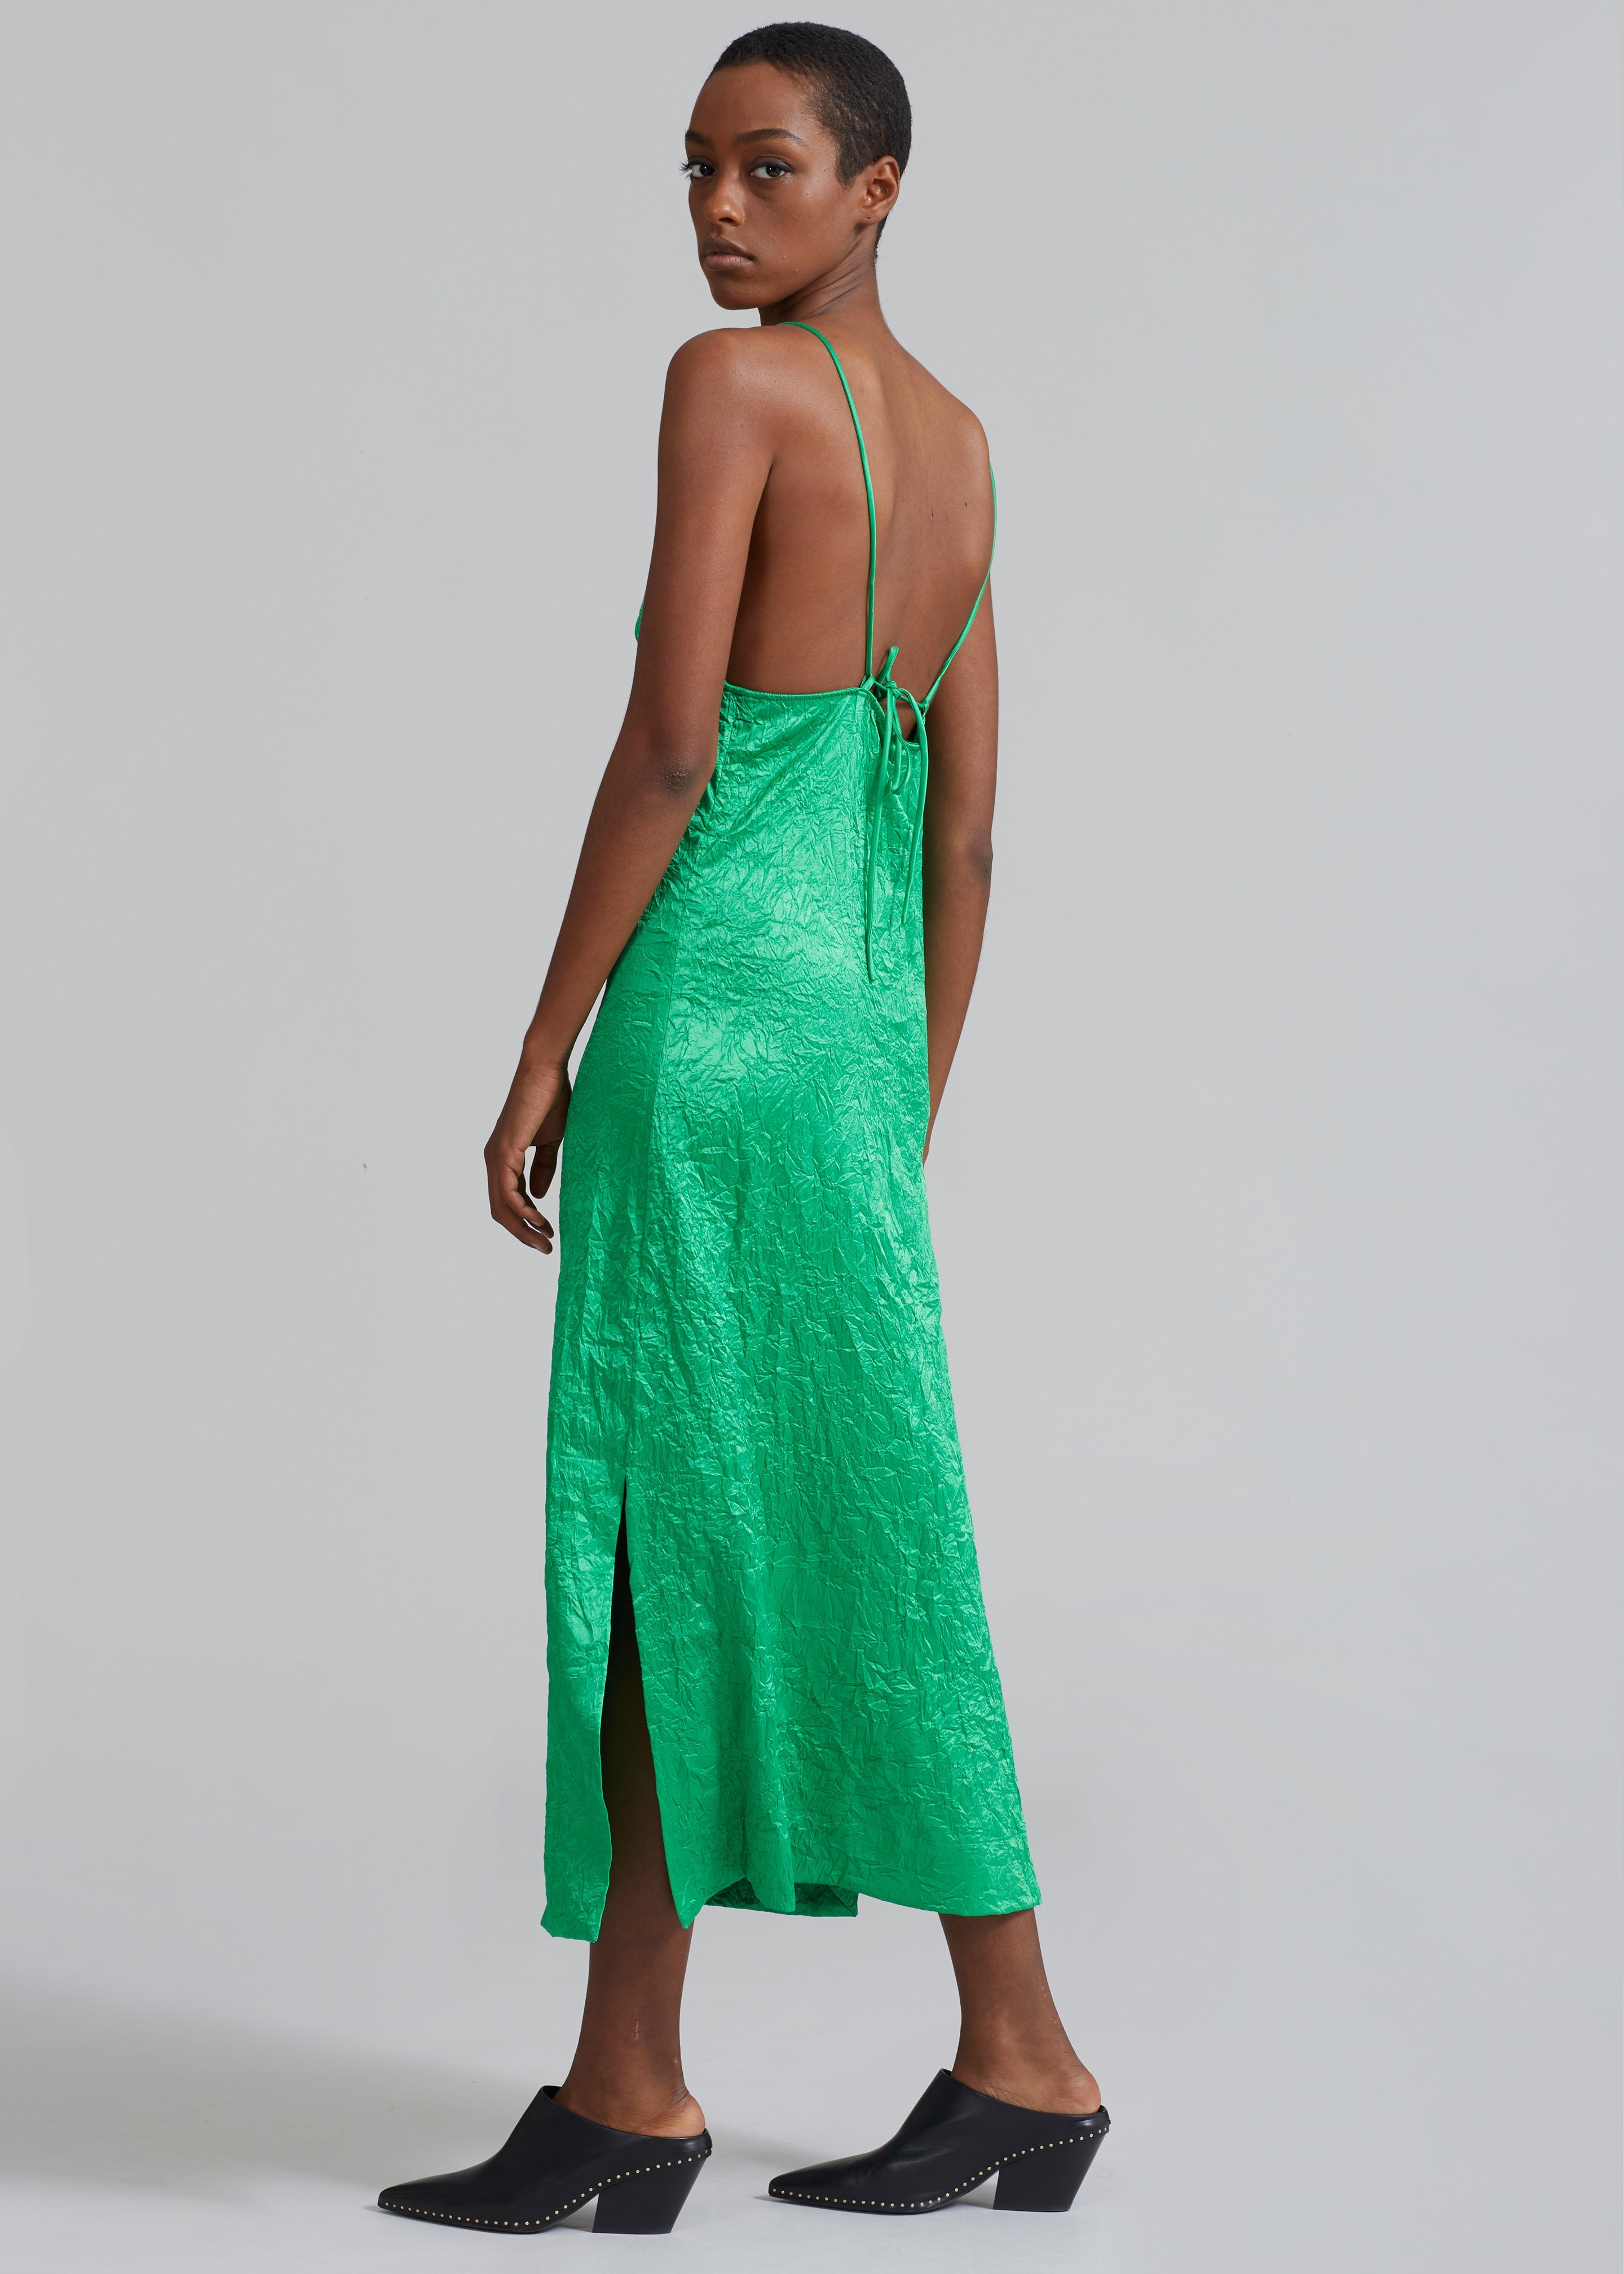 GANNI Crinkled Satin Slip Dress - Bright Green - 2